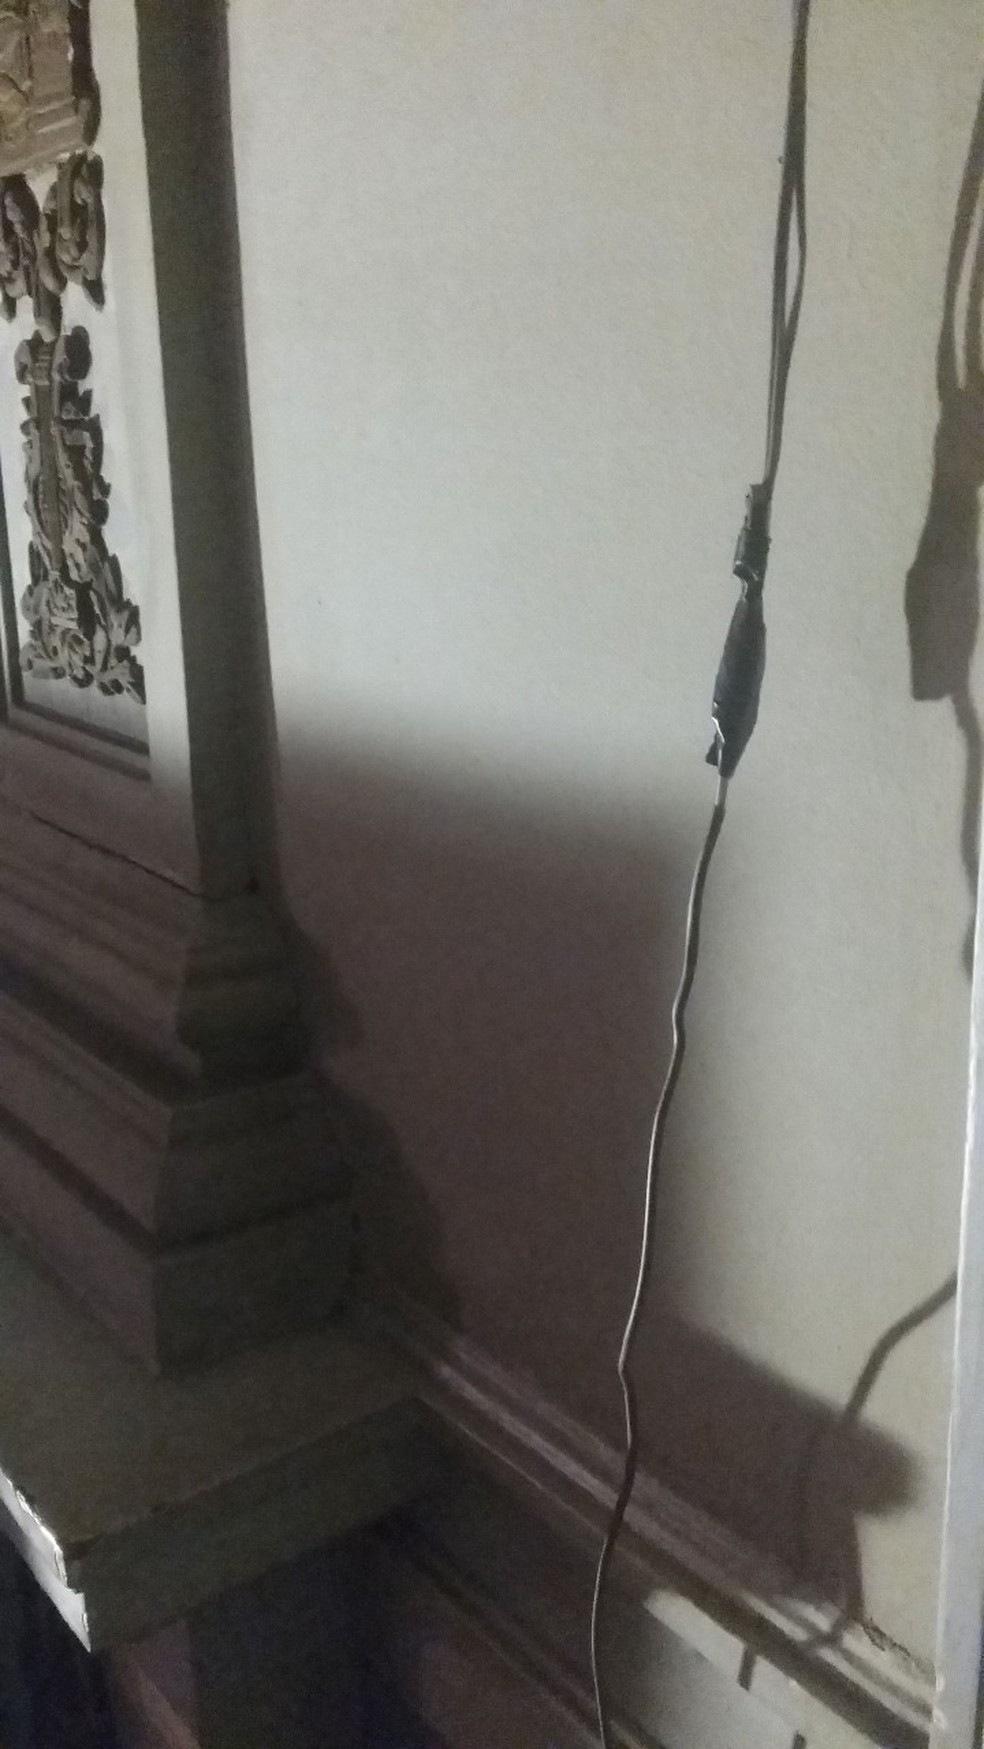 Gambiarra de fio solto pendurado no quarto de D Joao VI (Foto: Reprodução)